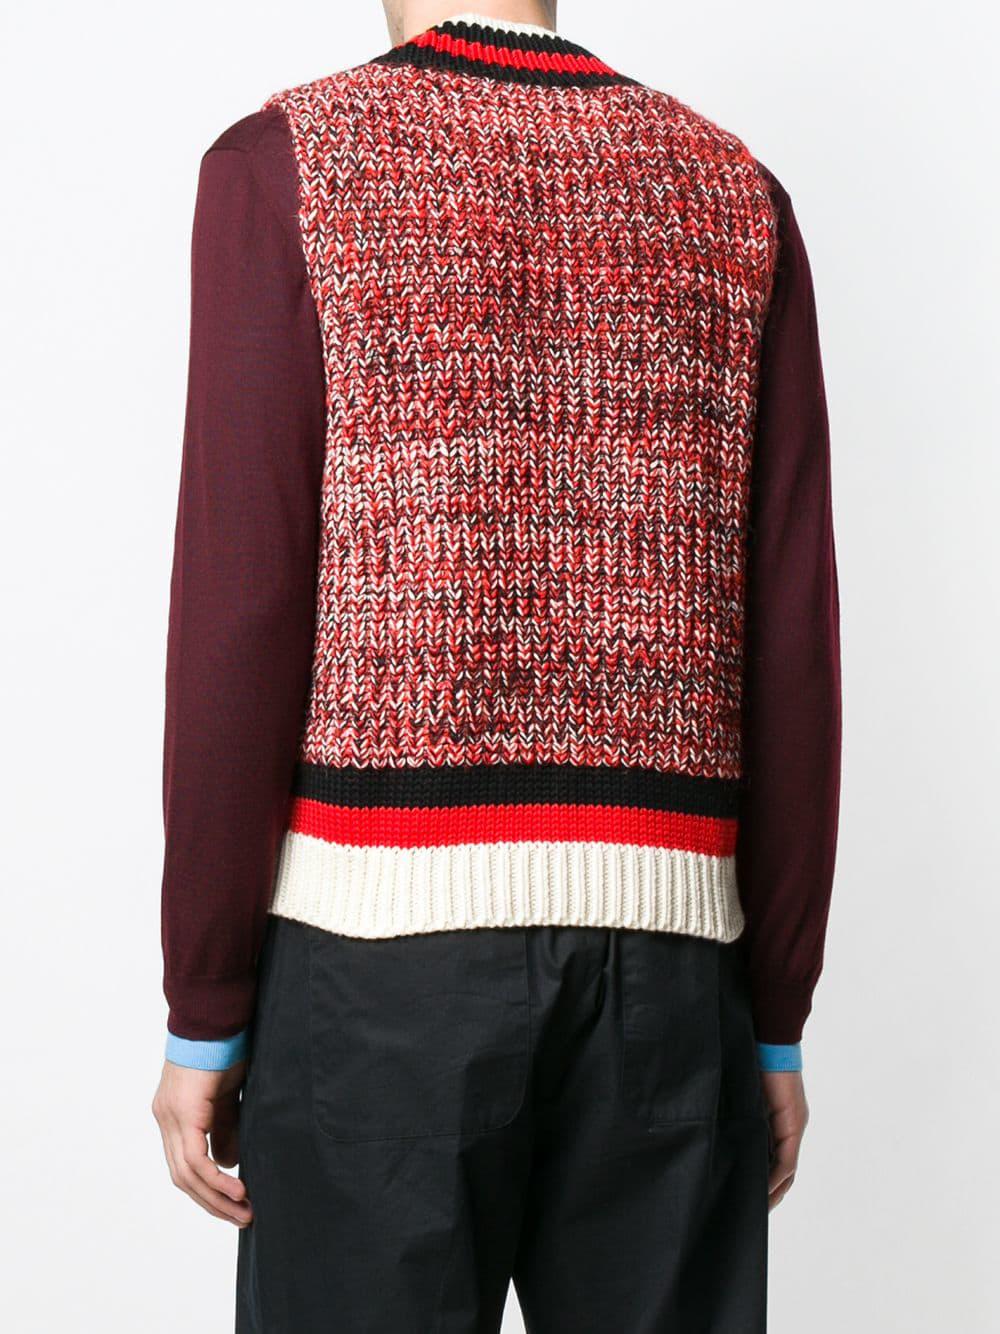 Maison Margiela Sleeveless Sweater in Red for Men - Lyst